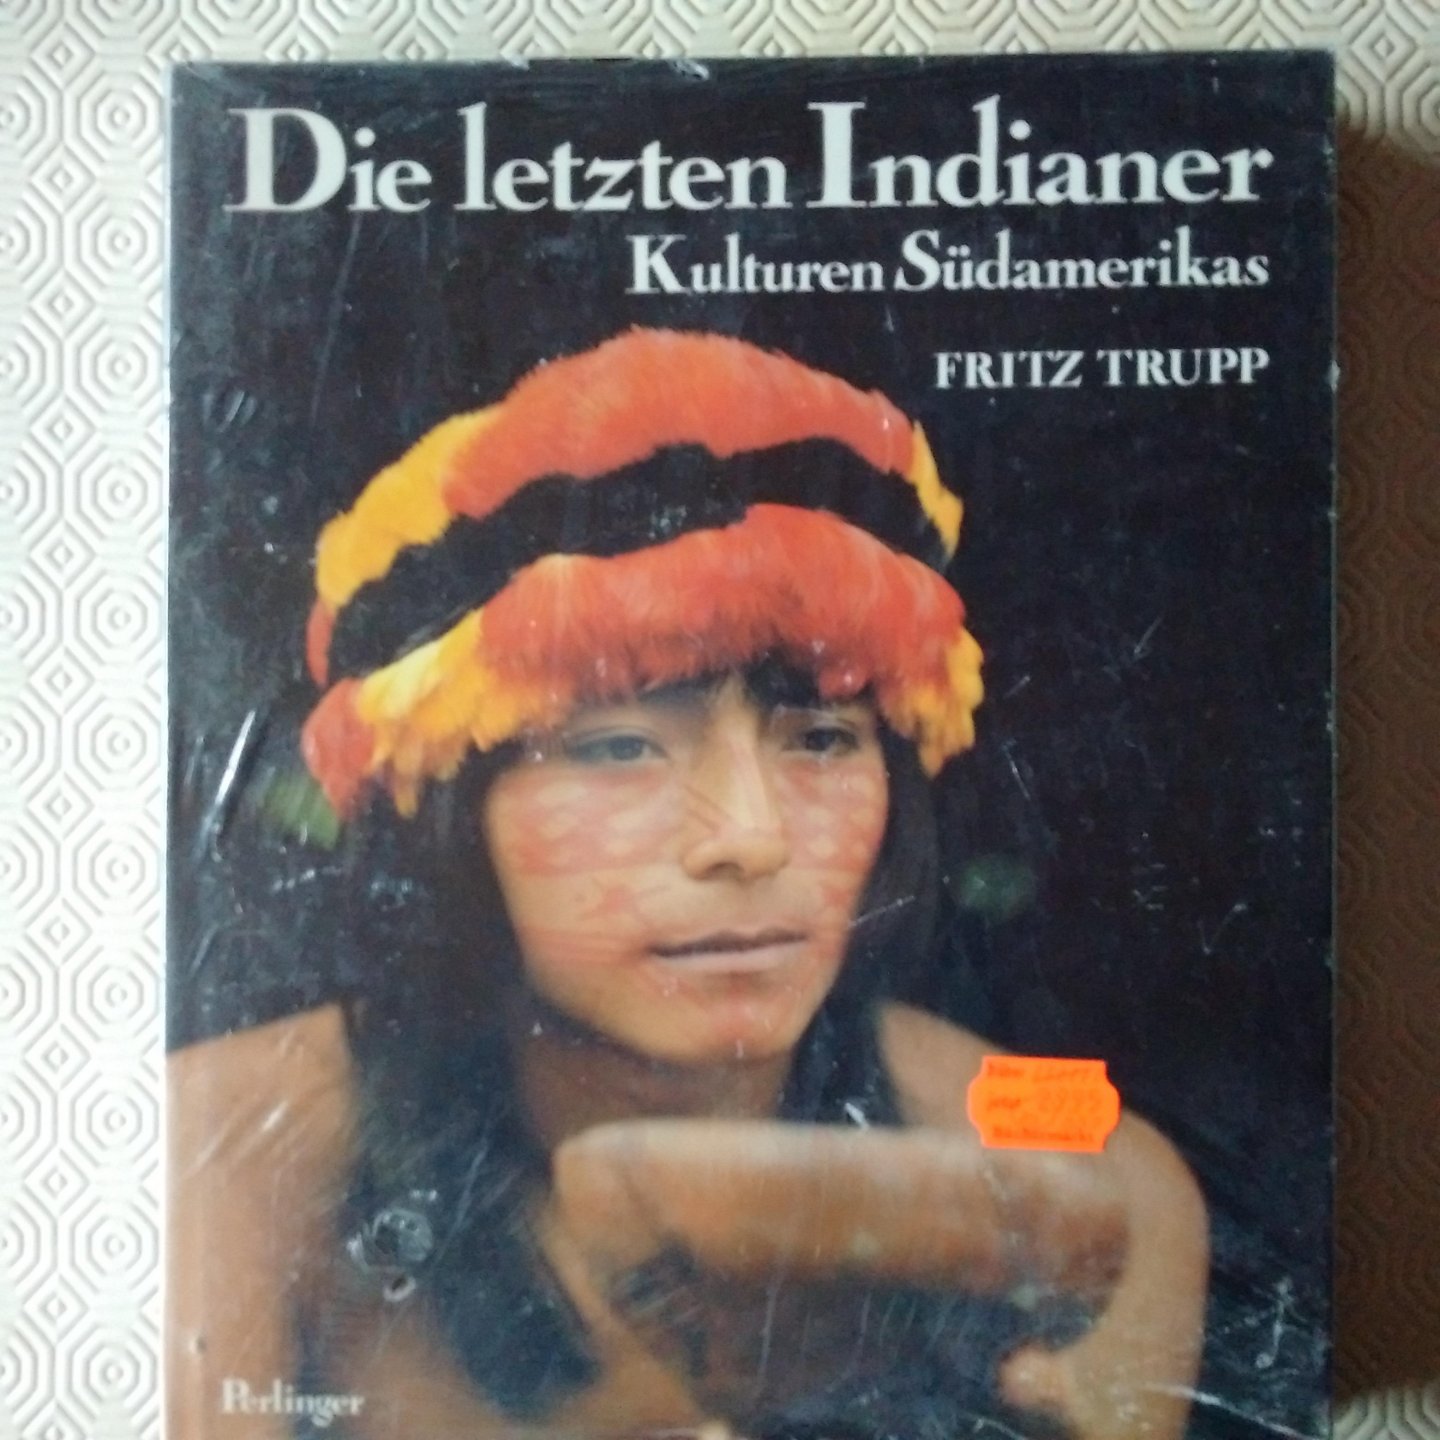 Trupp, Fritz - Die letzten Indianer. Kulturen Südamerikas